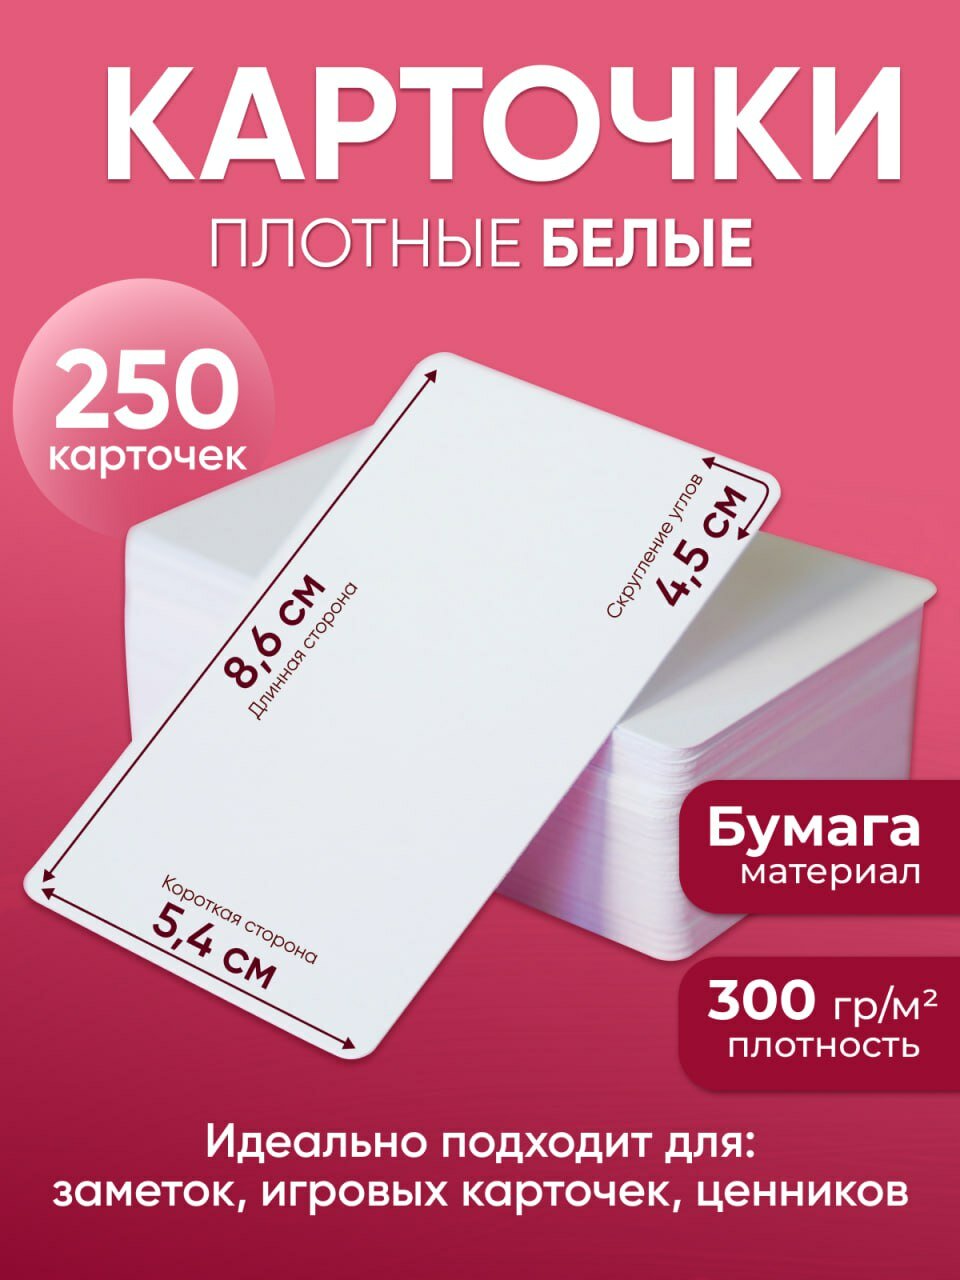 Белые пустые карточки 250 шт - матовые из плотной бумаги (300 г/м2) с закругленными углами